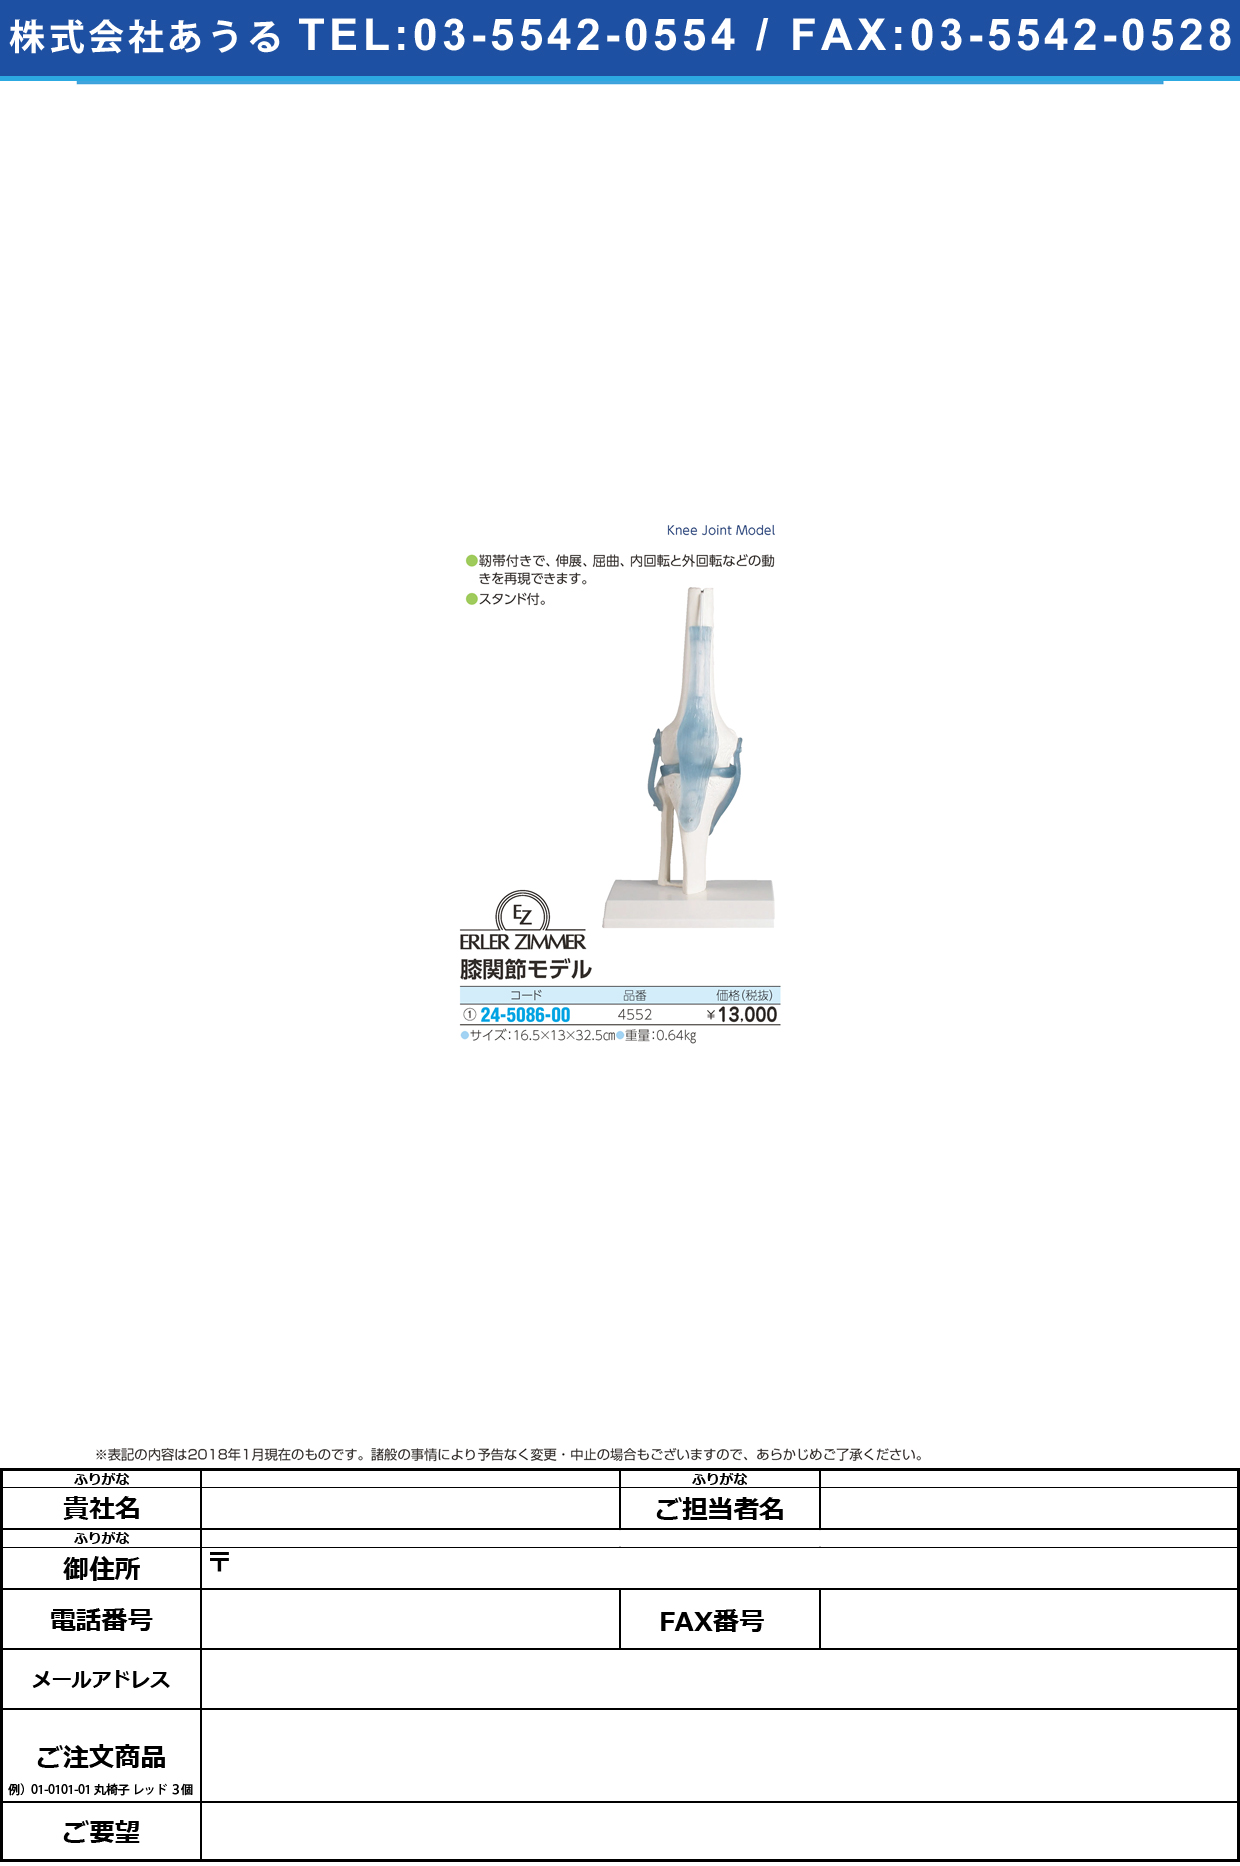 (24-5086-00)膝関節モデル 4552 ﾋｻﾞｶﾝｾﾂﾓﾃﾞﾙ(エルラージーマー社)【1個単位】【2018年カタログ商品】